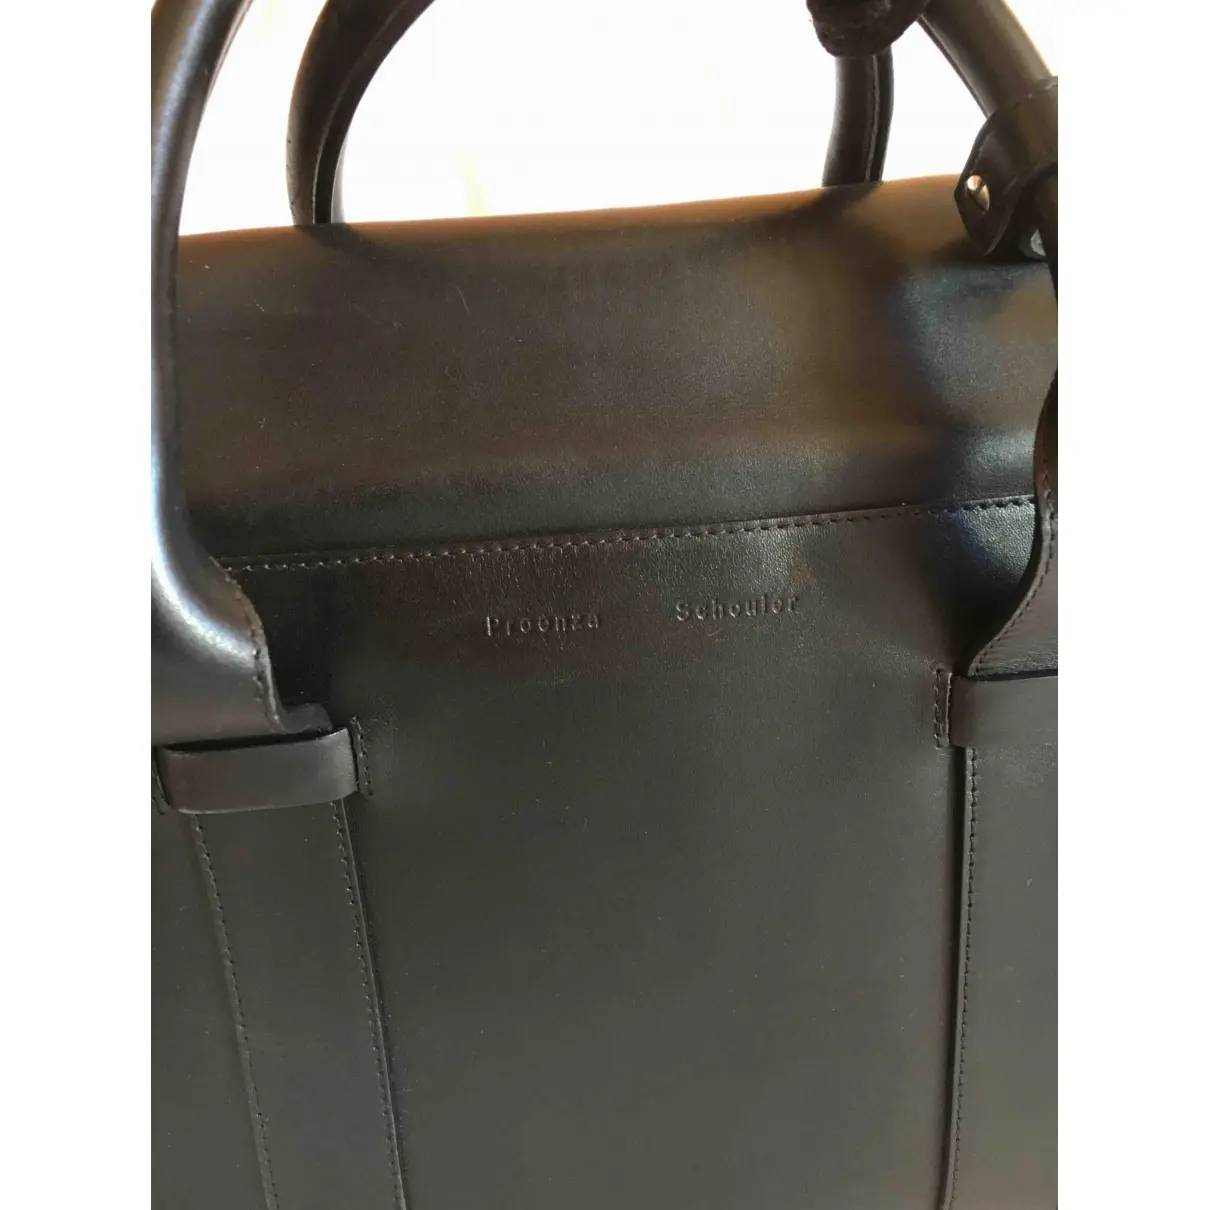 PS Elliot leather handbag Proenza Schouler